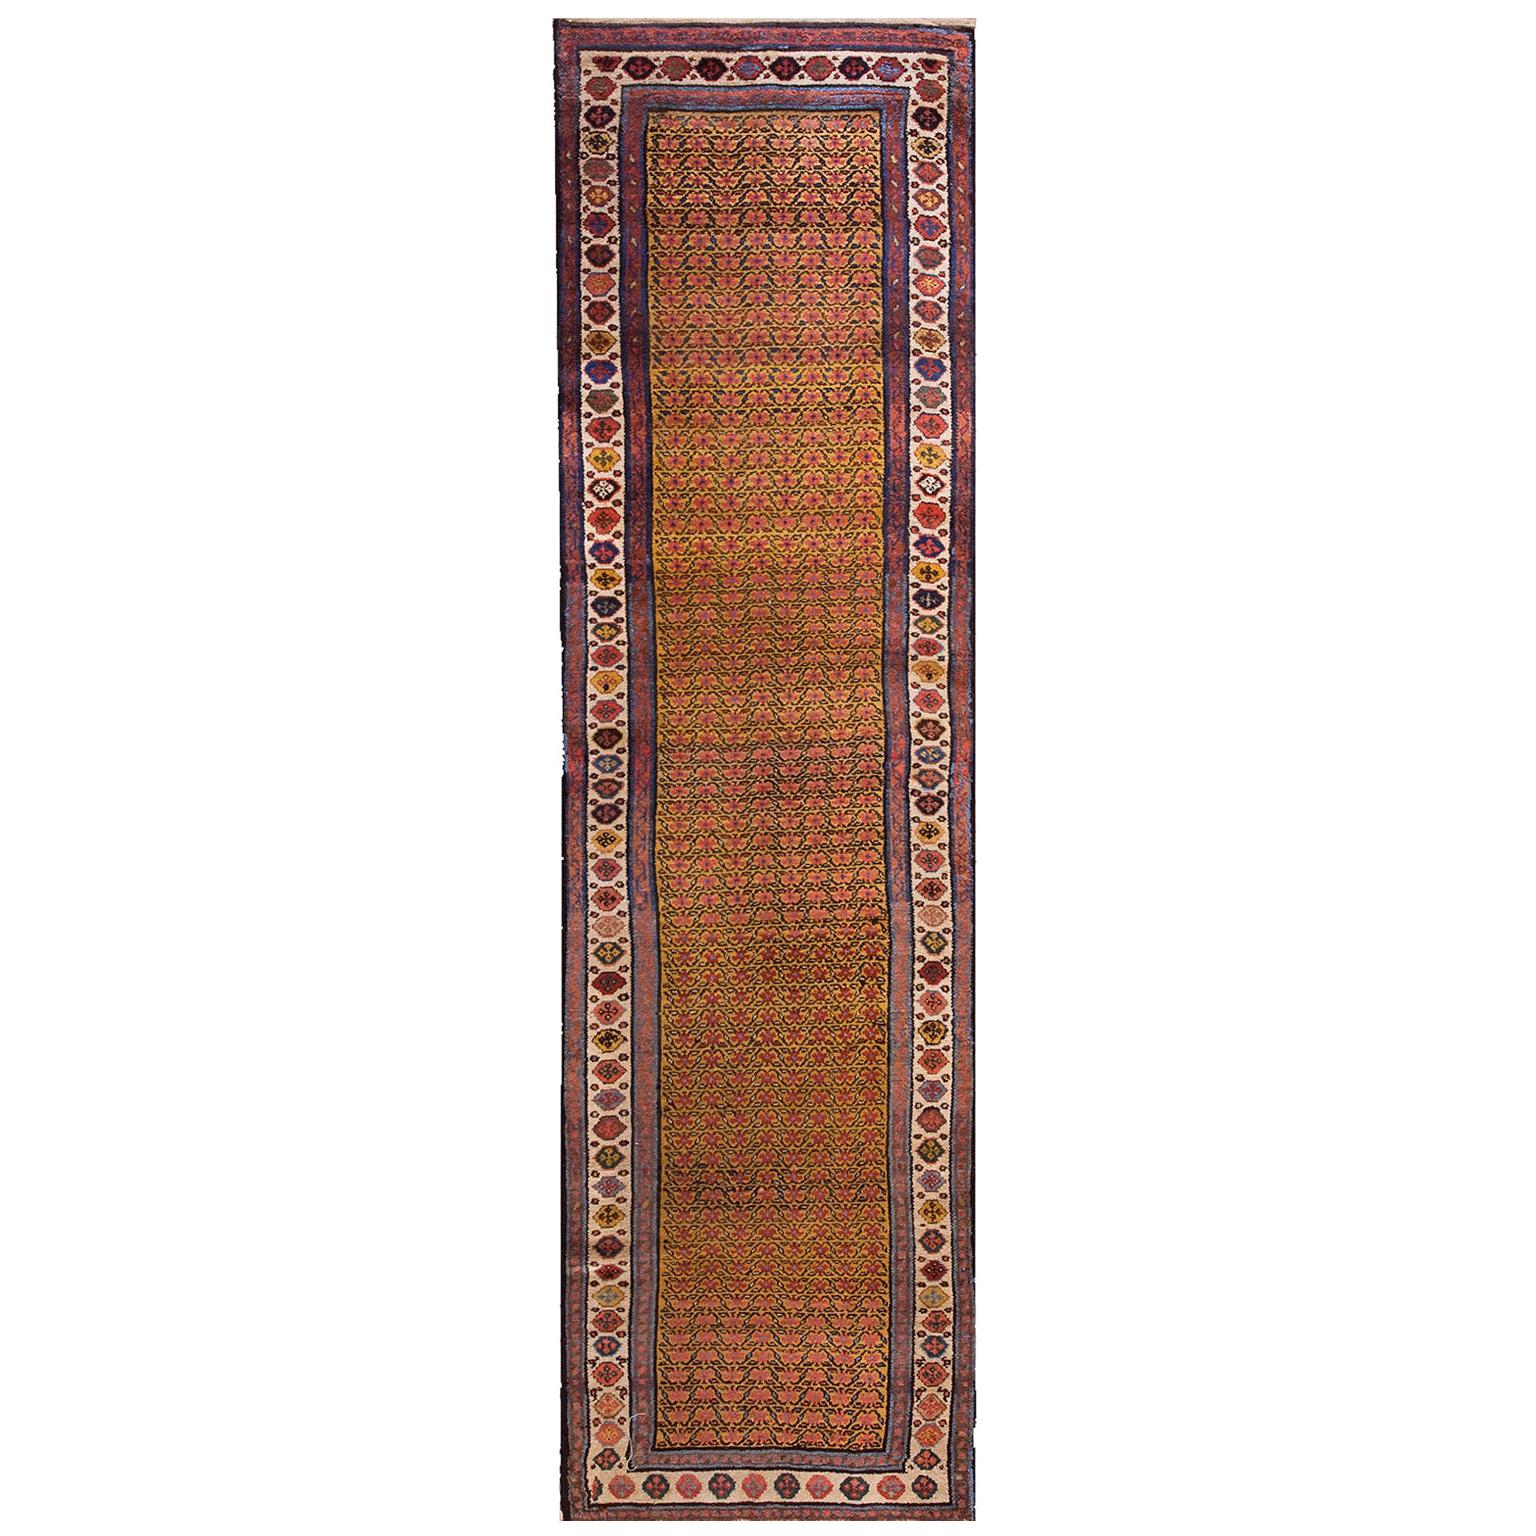 Ende 19. Jahrhundert N.W. Persischer Teppich ( 3' x 11'7" - 91 x 353)